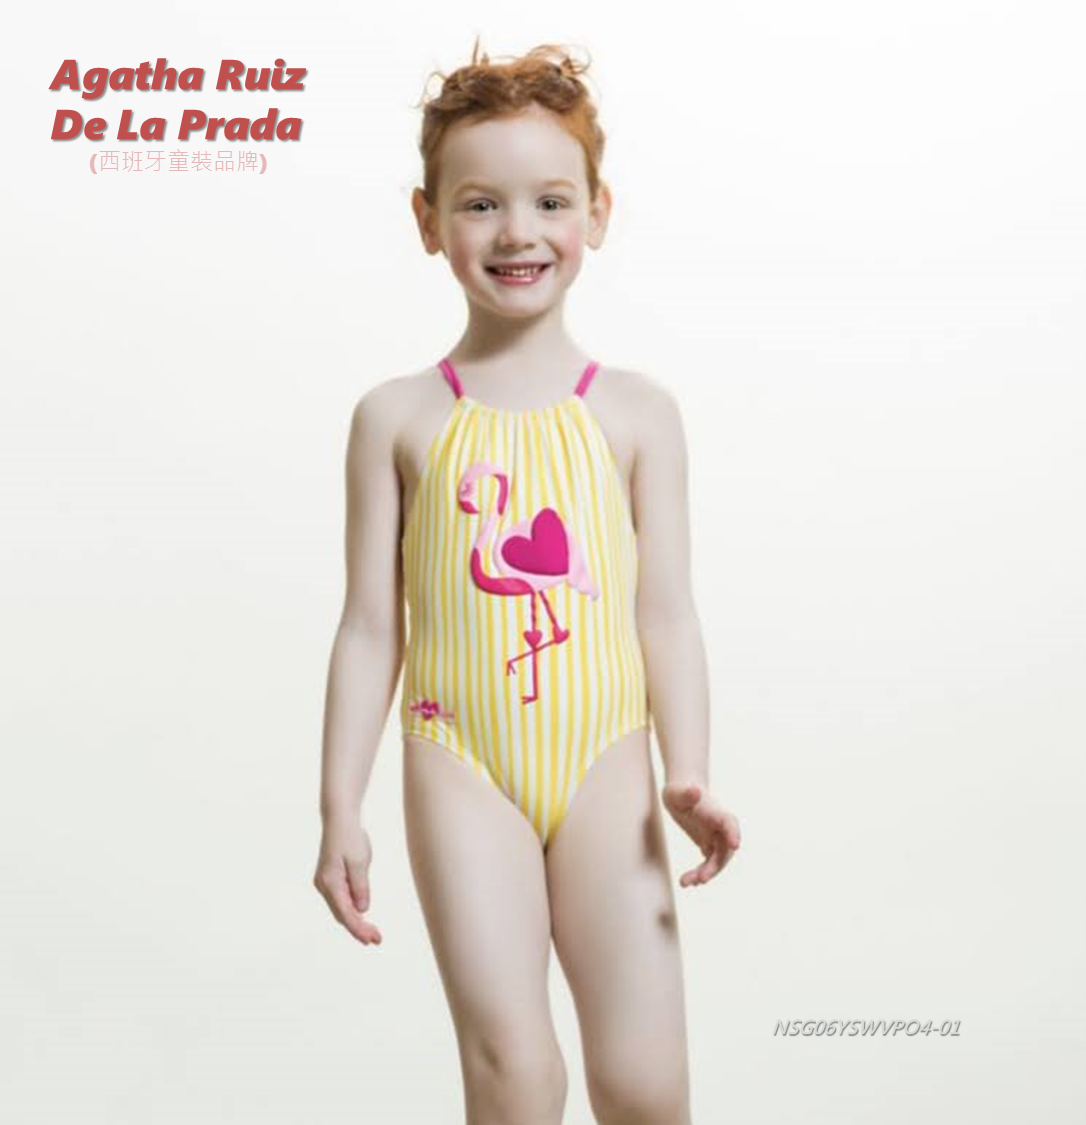 [歐洲進口] Agatha Ruiz de la Prada, 女童泳裝, 熱情小鶴, 身高114公分, 現貨唯一